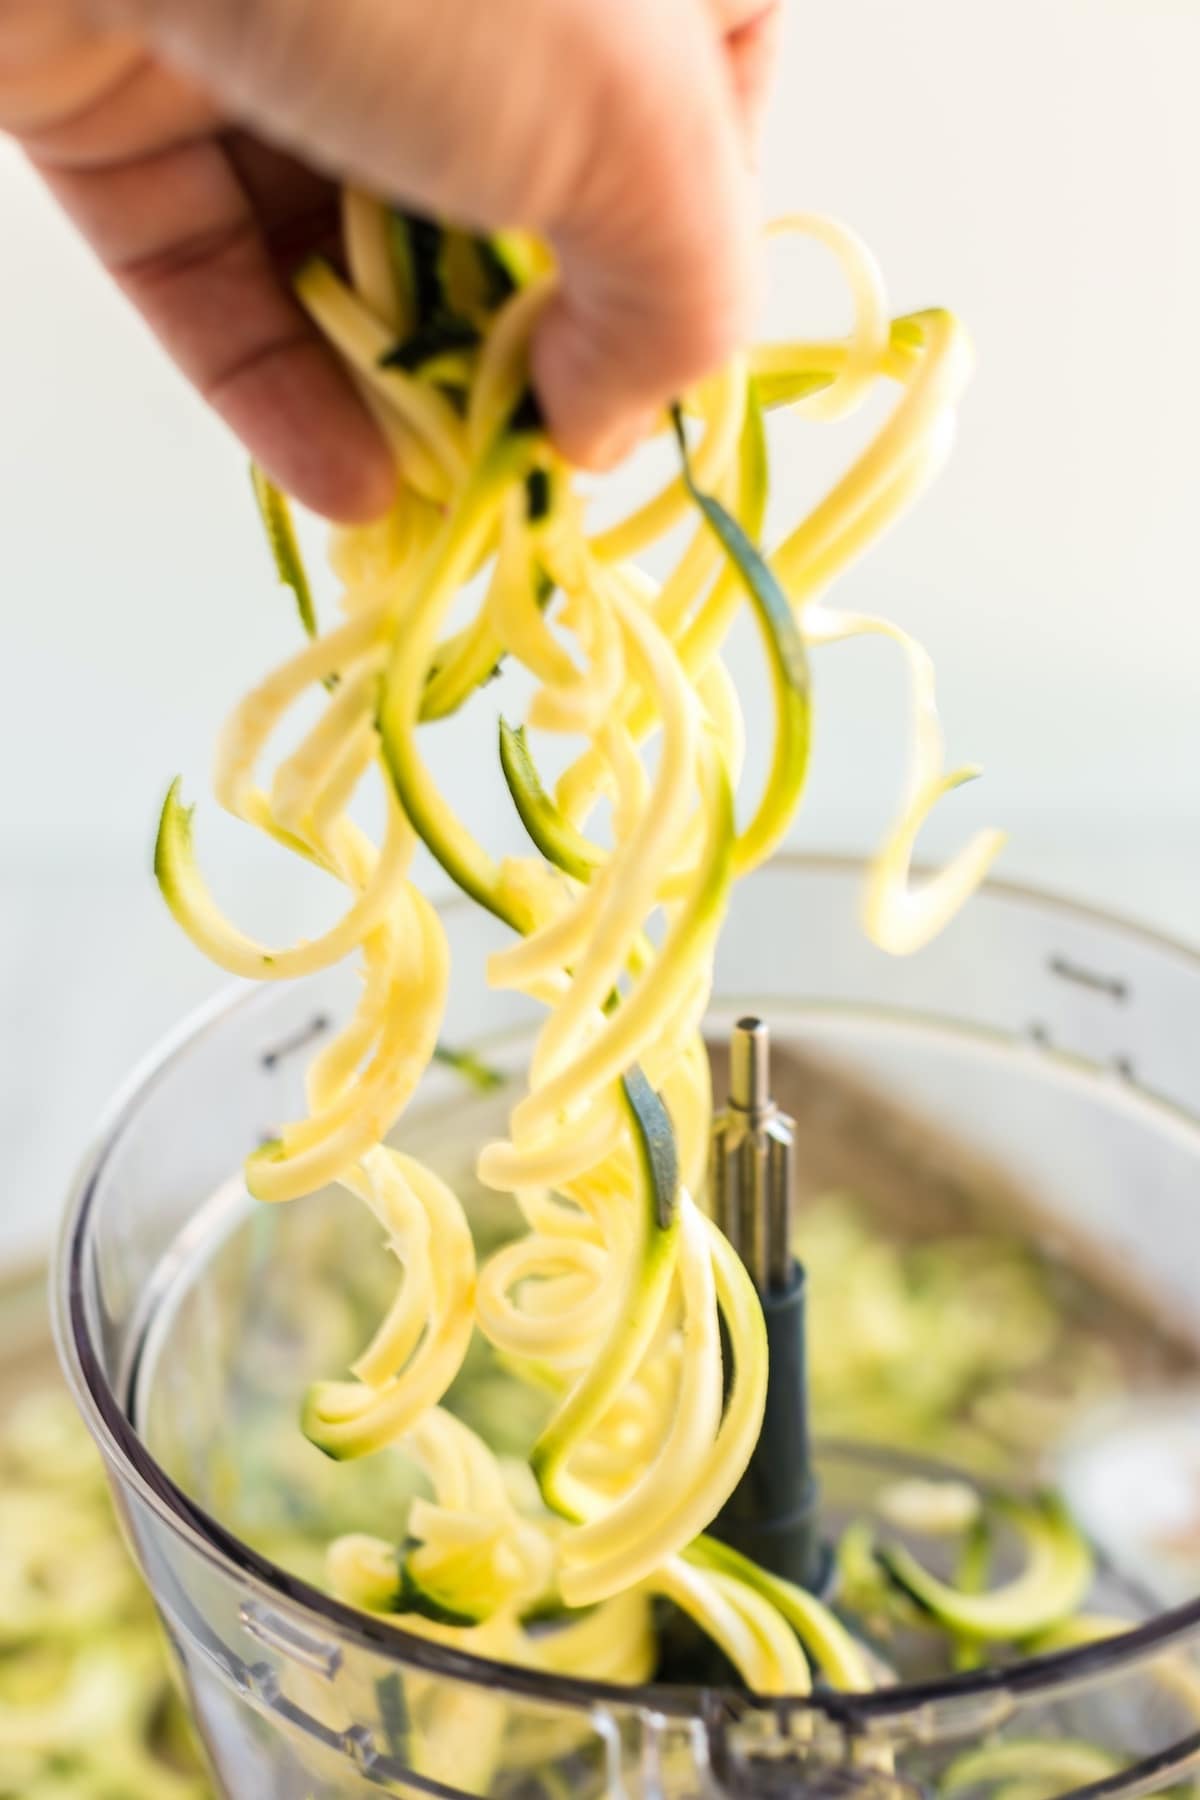 zucchini cut in spiral